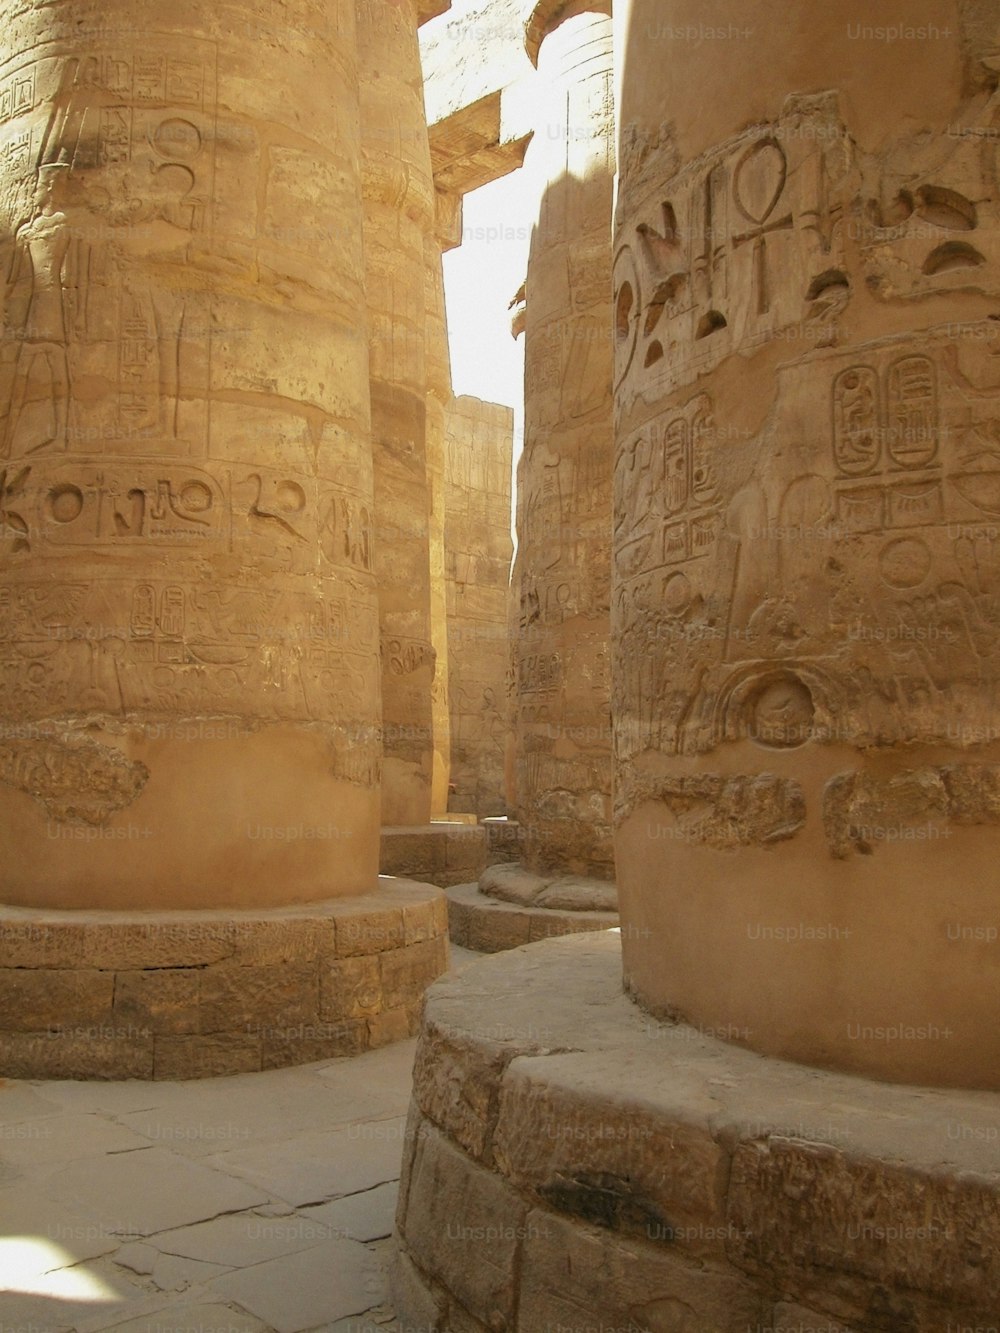 Le colonne del tempio sono scolpite con antiche scritture egiziane